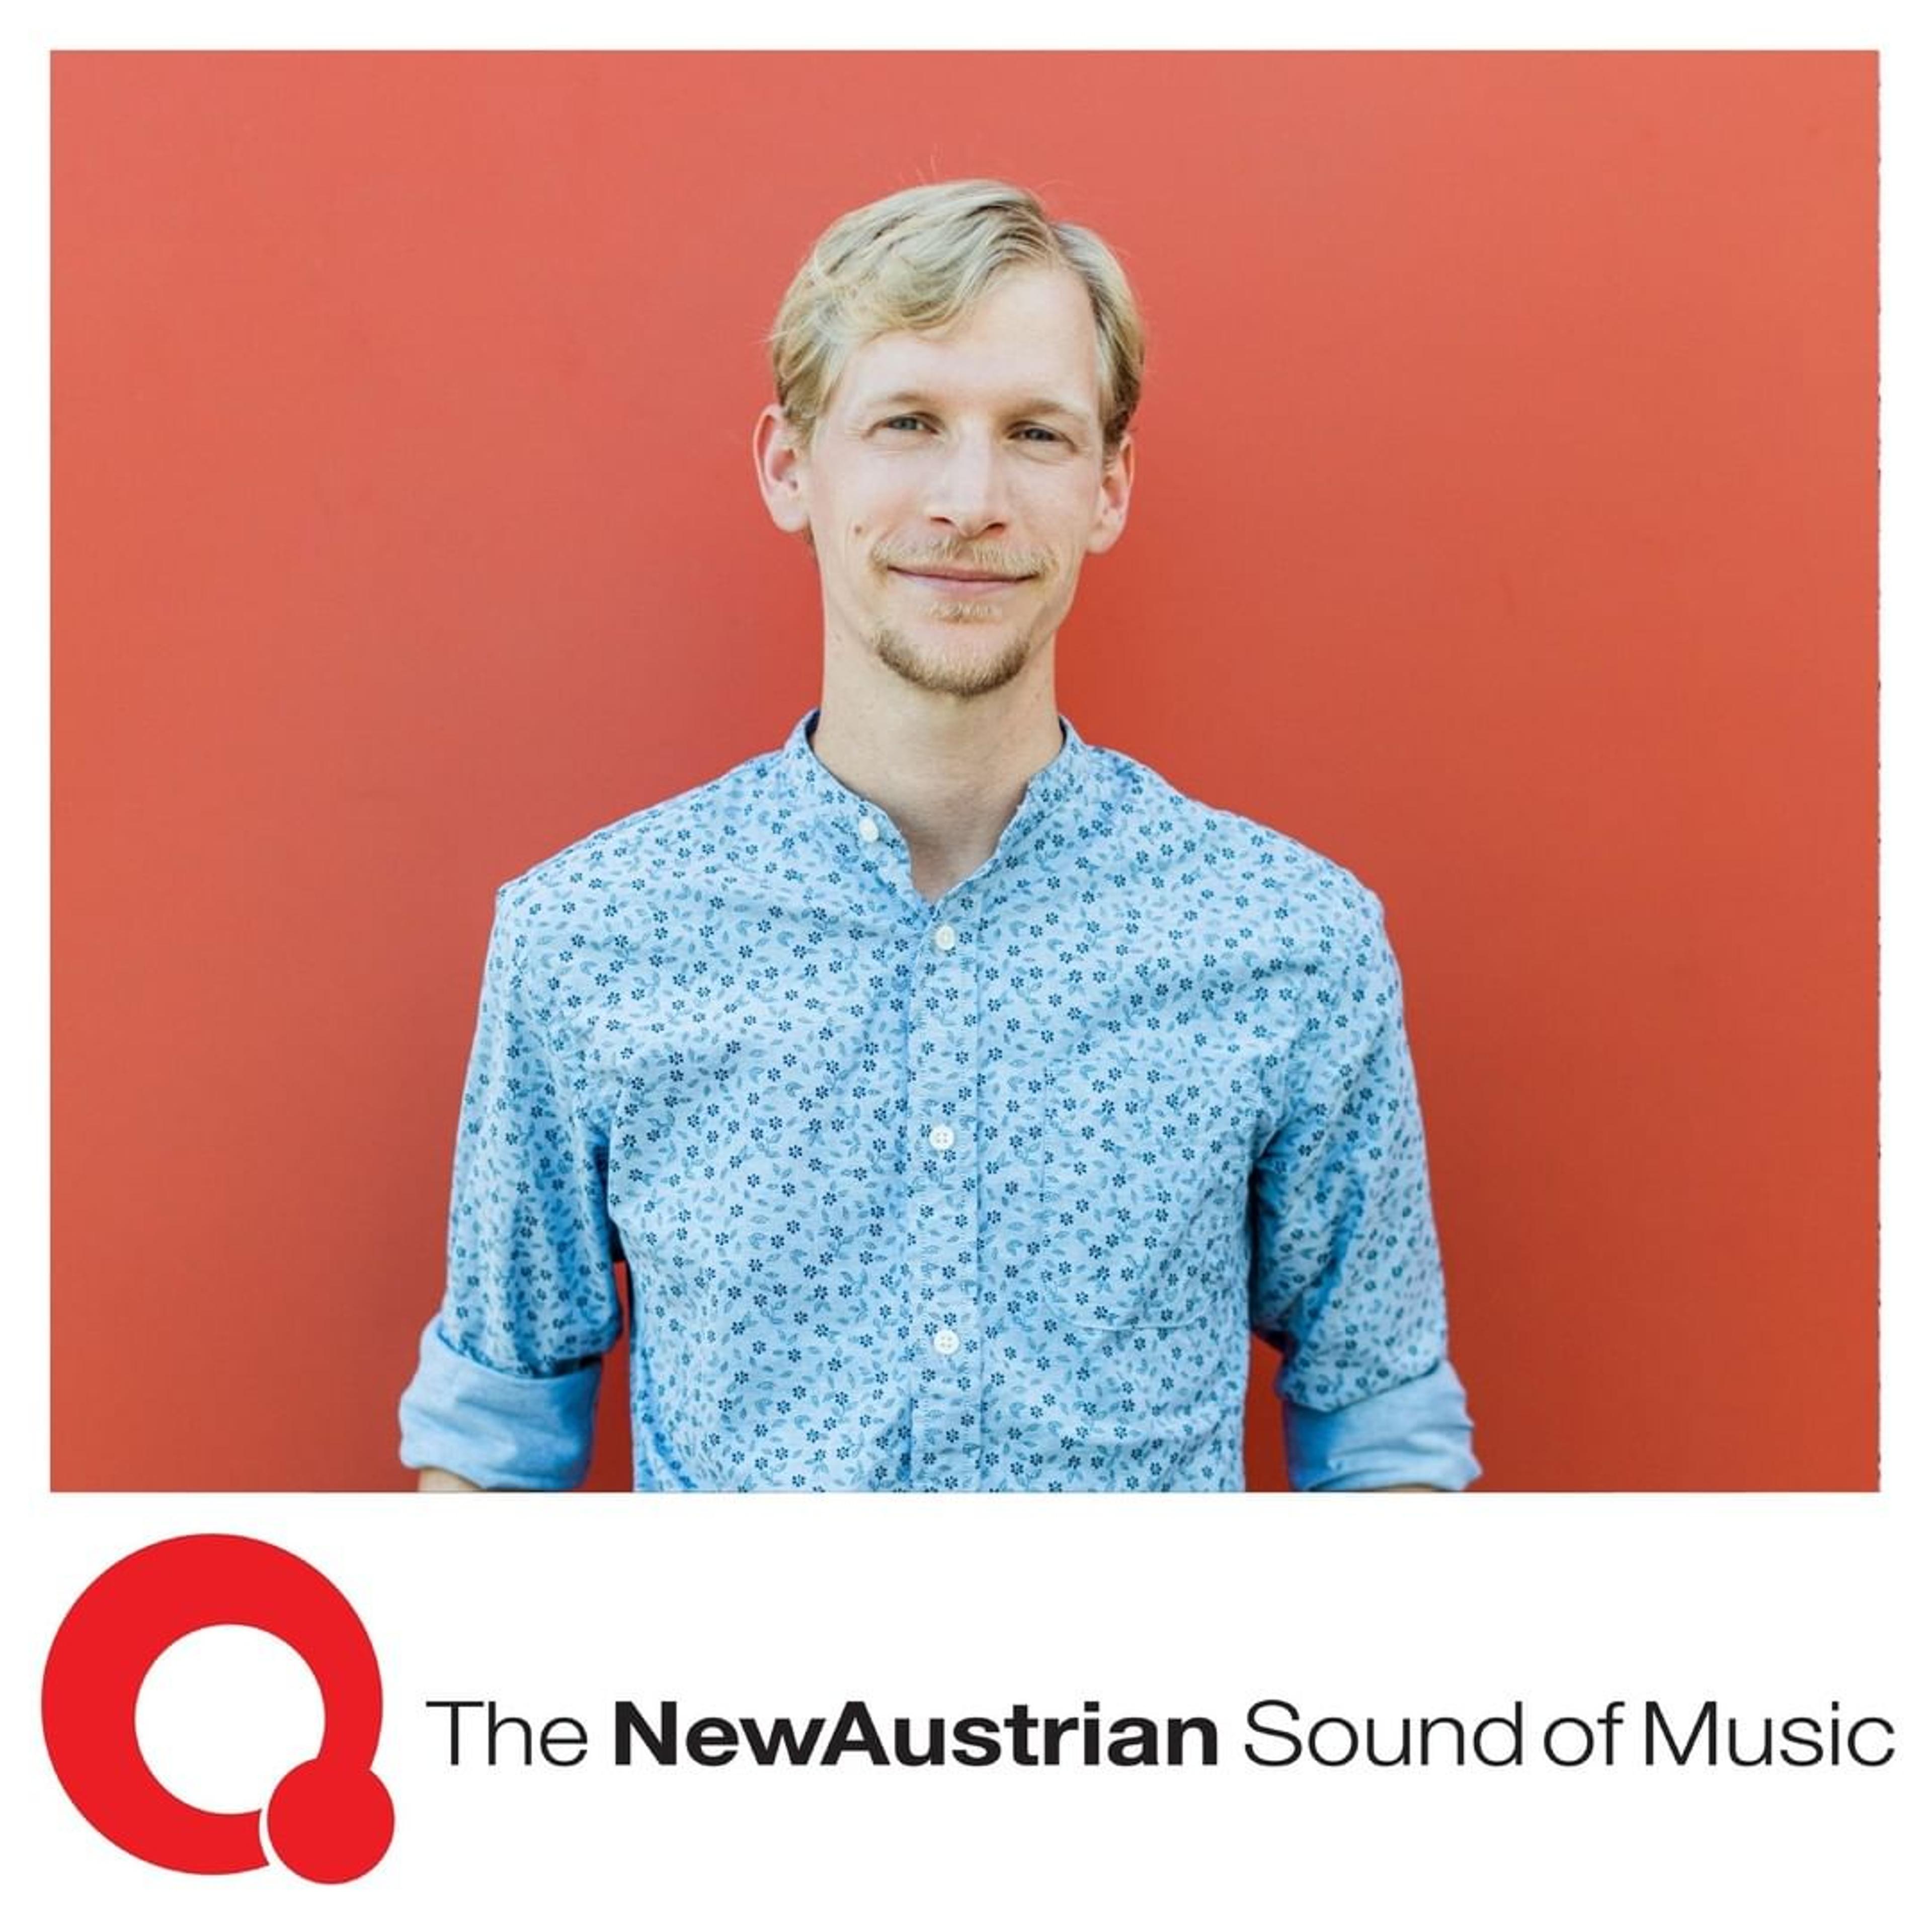 Martin Listabarth wurde als Jazz Pianist für das Musikförderprogramm The New Austrian Sound of Music ausgewählt - dieses Bild zeigt ein Porträtfoto von ihm und unterhalb das offizielle NASOM Logo. 